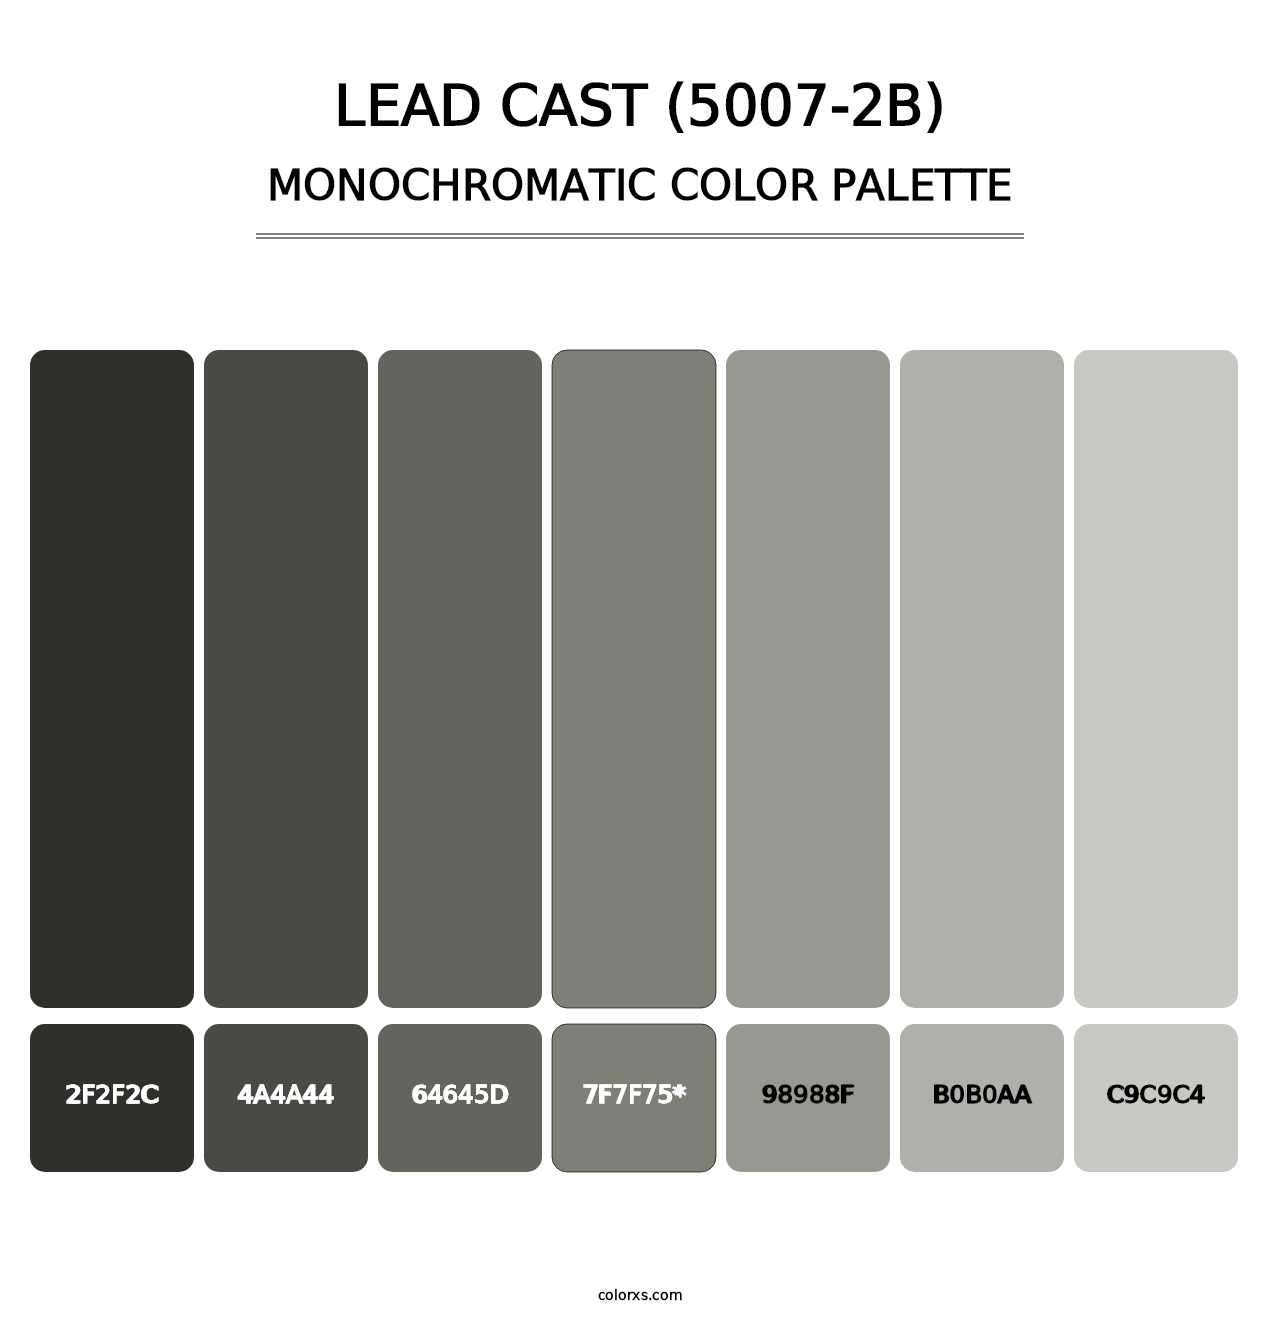 Lead Cast (5007-2B) - Monochromatic Color Palette